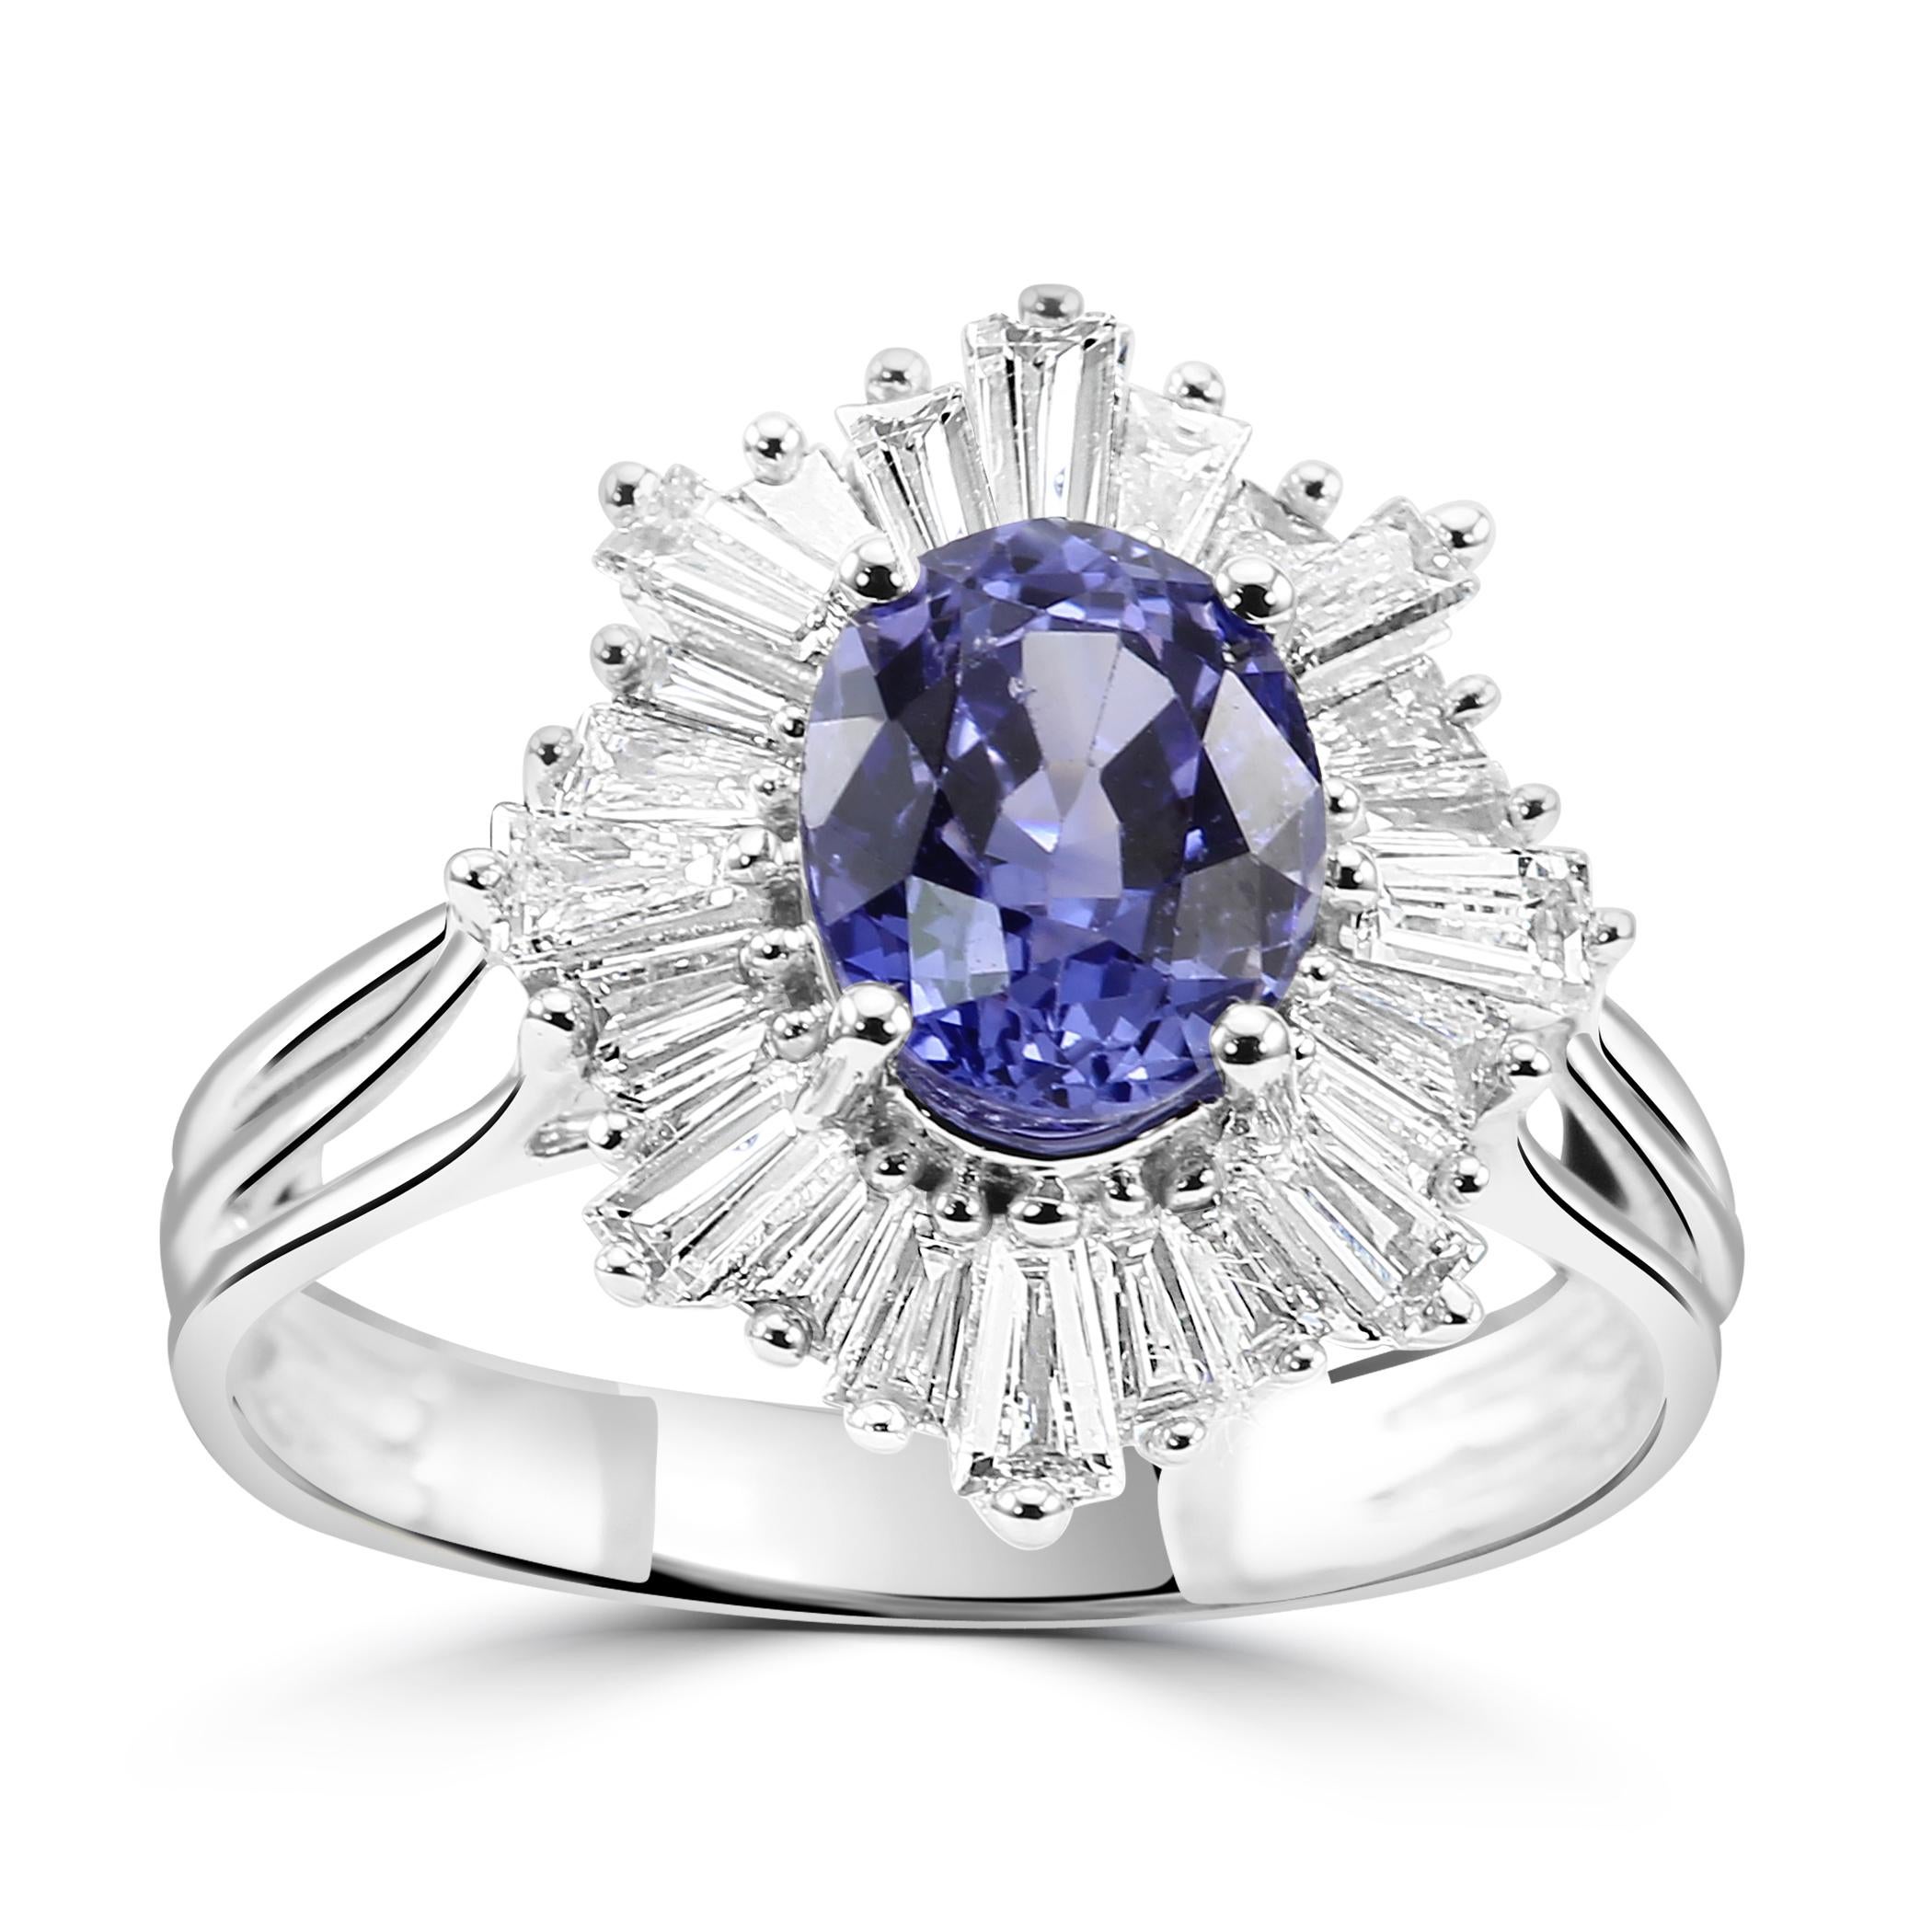 Unser Ceylon-Saphir-Ballerina-Ring im Art-déco-Stil ist ein atemberaubendes Schmuckstück, das Vintage-Charme mit zeitgenössischer Eleganz verbindet.

Der Star dieses Meisterwerks ist der ovale Ceylon-Saphir, der für seinen tiefblauen Farbton bekannt